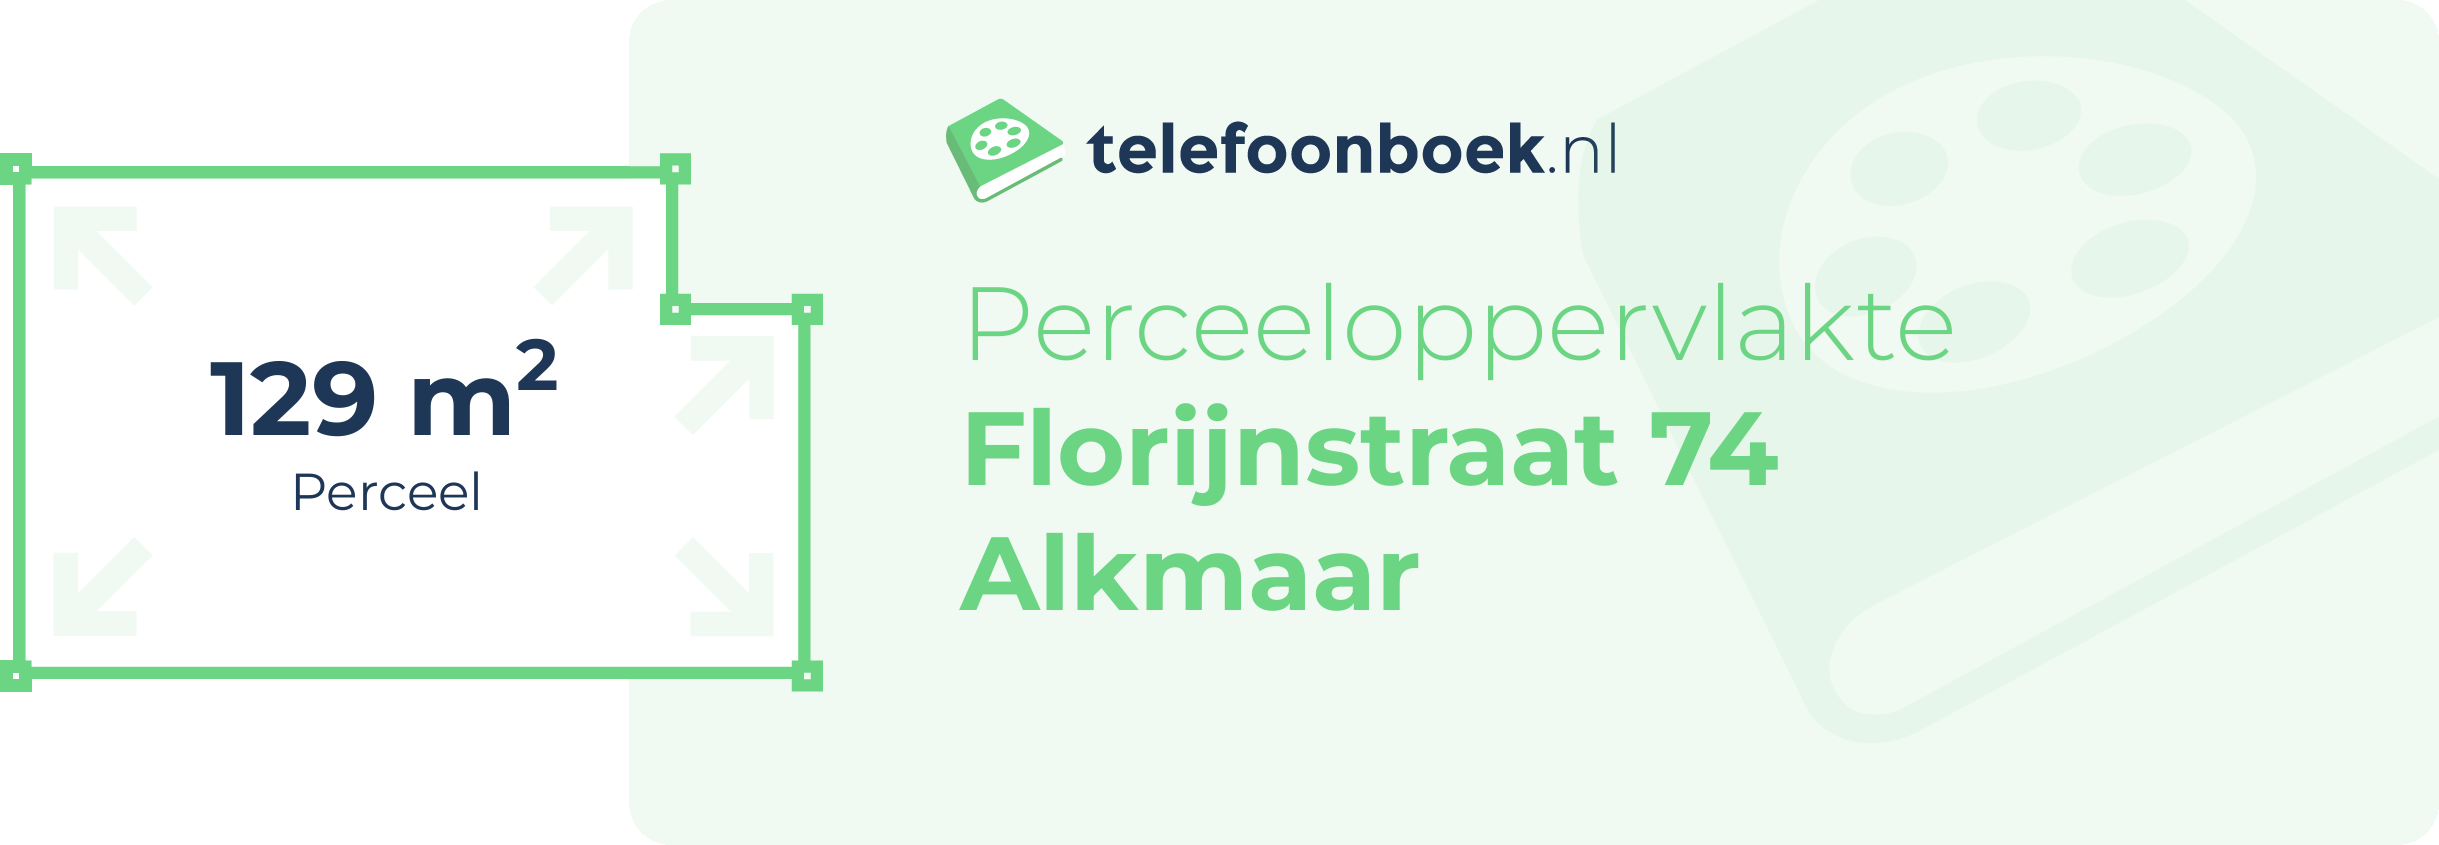 Perceeloppervlakte Florijnstraat 74 Alkmaar